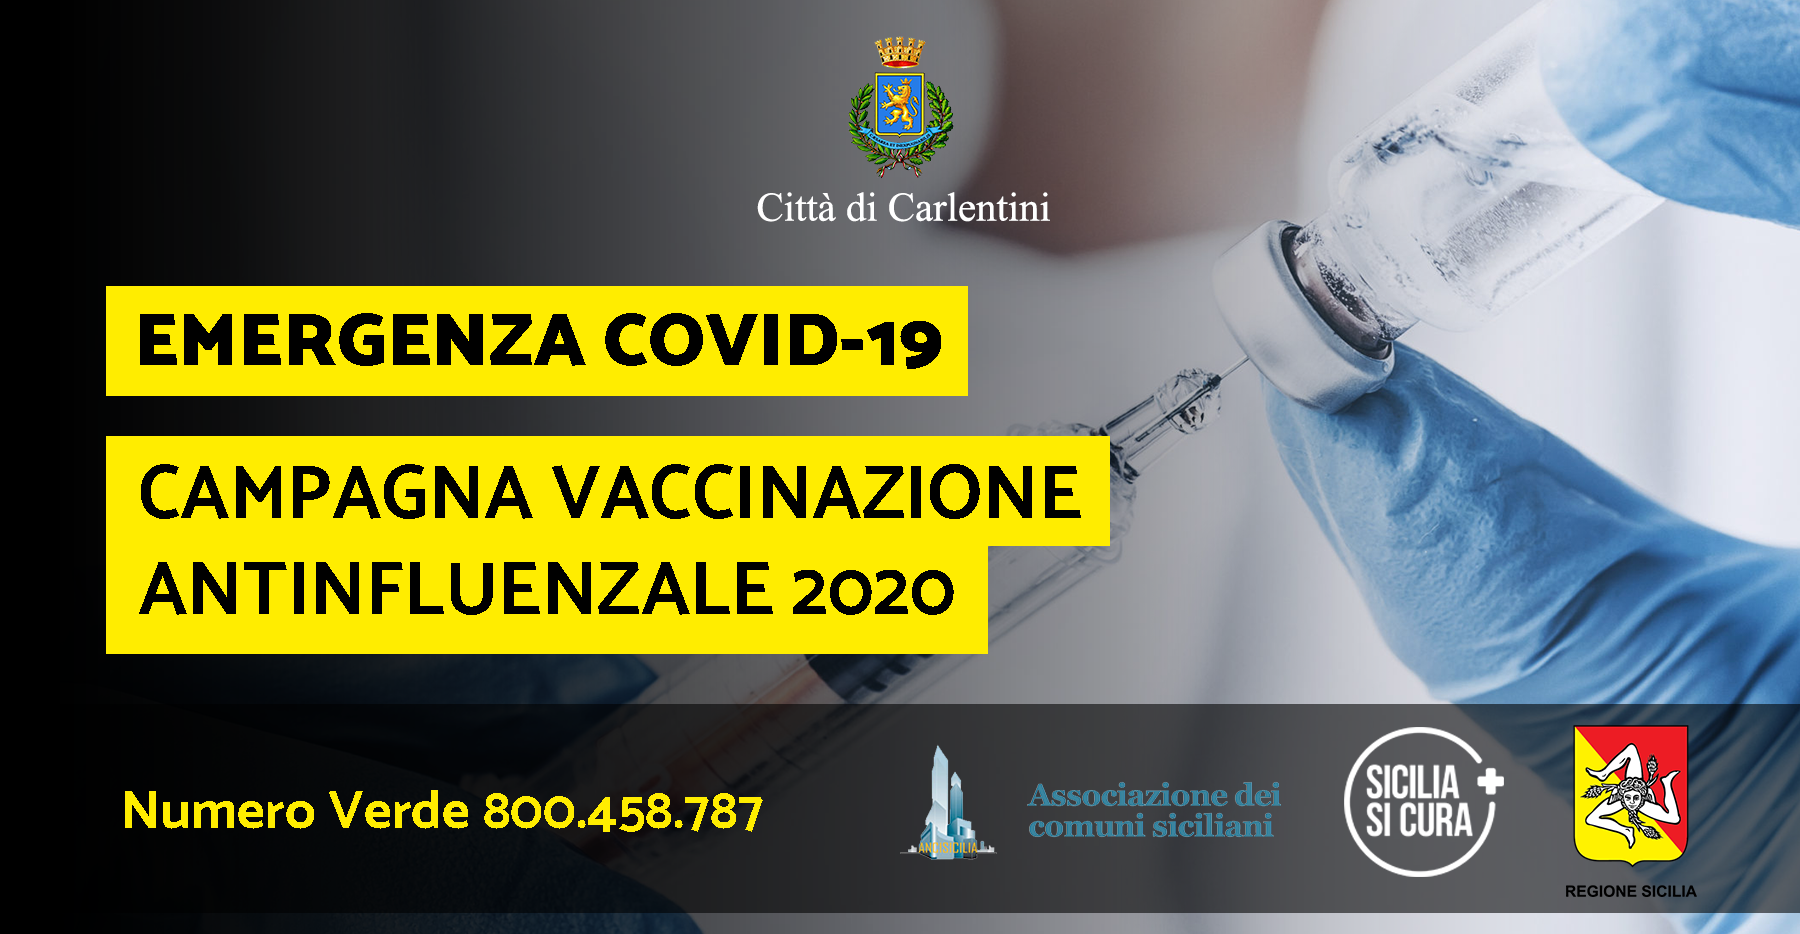 Campagna vaccinazione antinfluenzale 2020